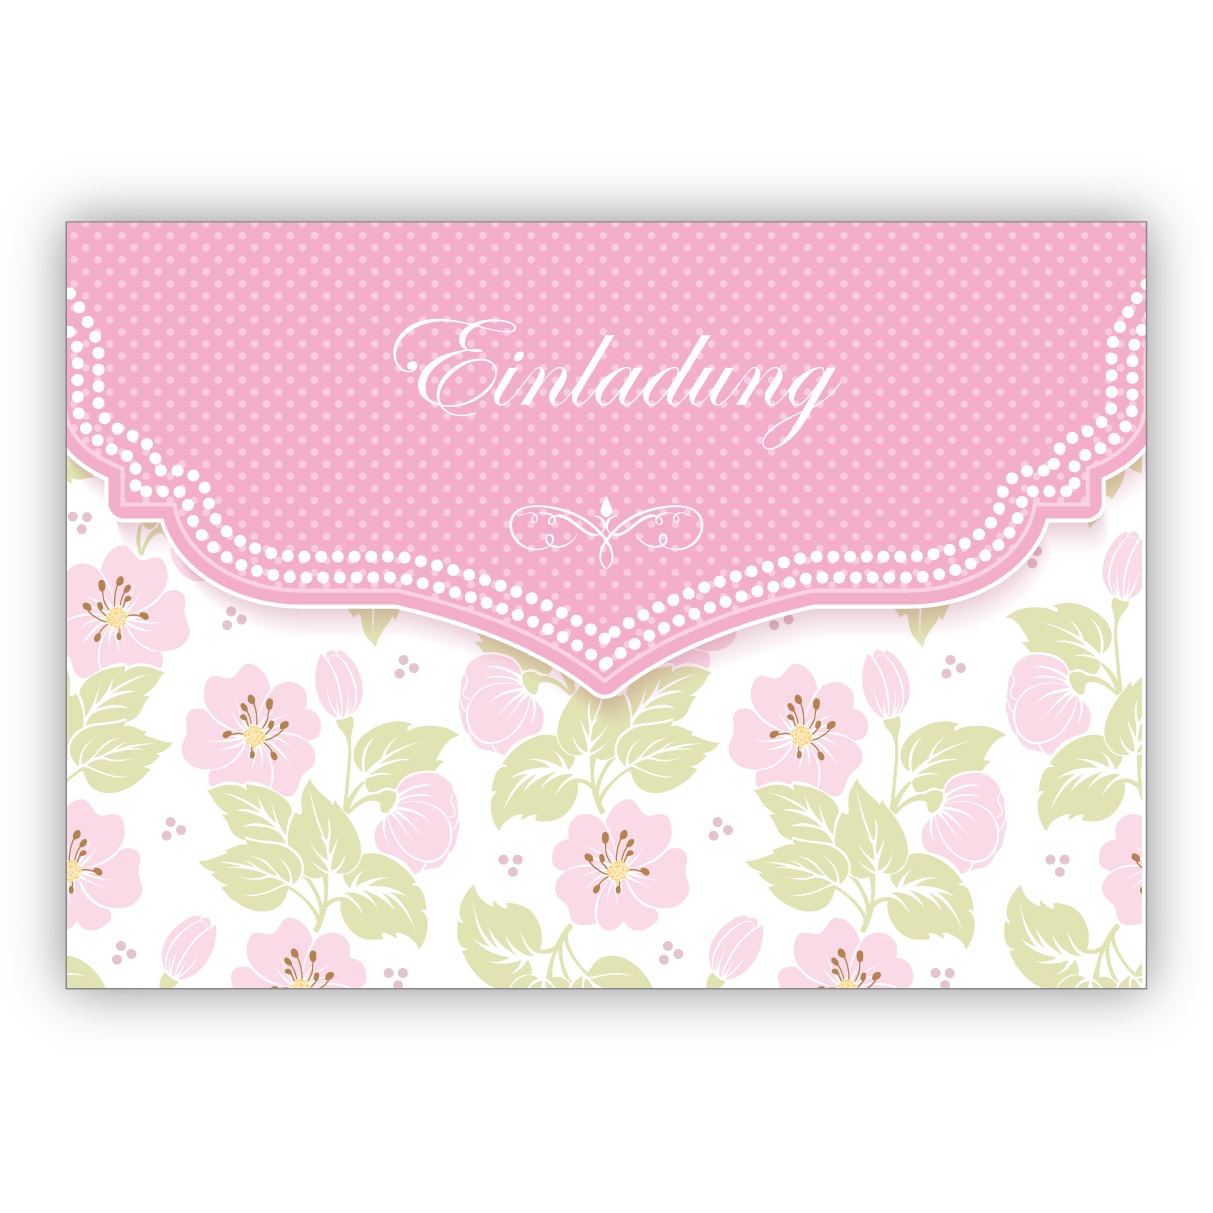 Schöne Einladungskarte mit zartem Blüten Muster in rosa zur Hochzeit, Taufe, Diner etc: Einladung